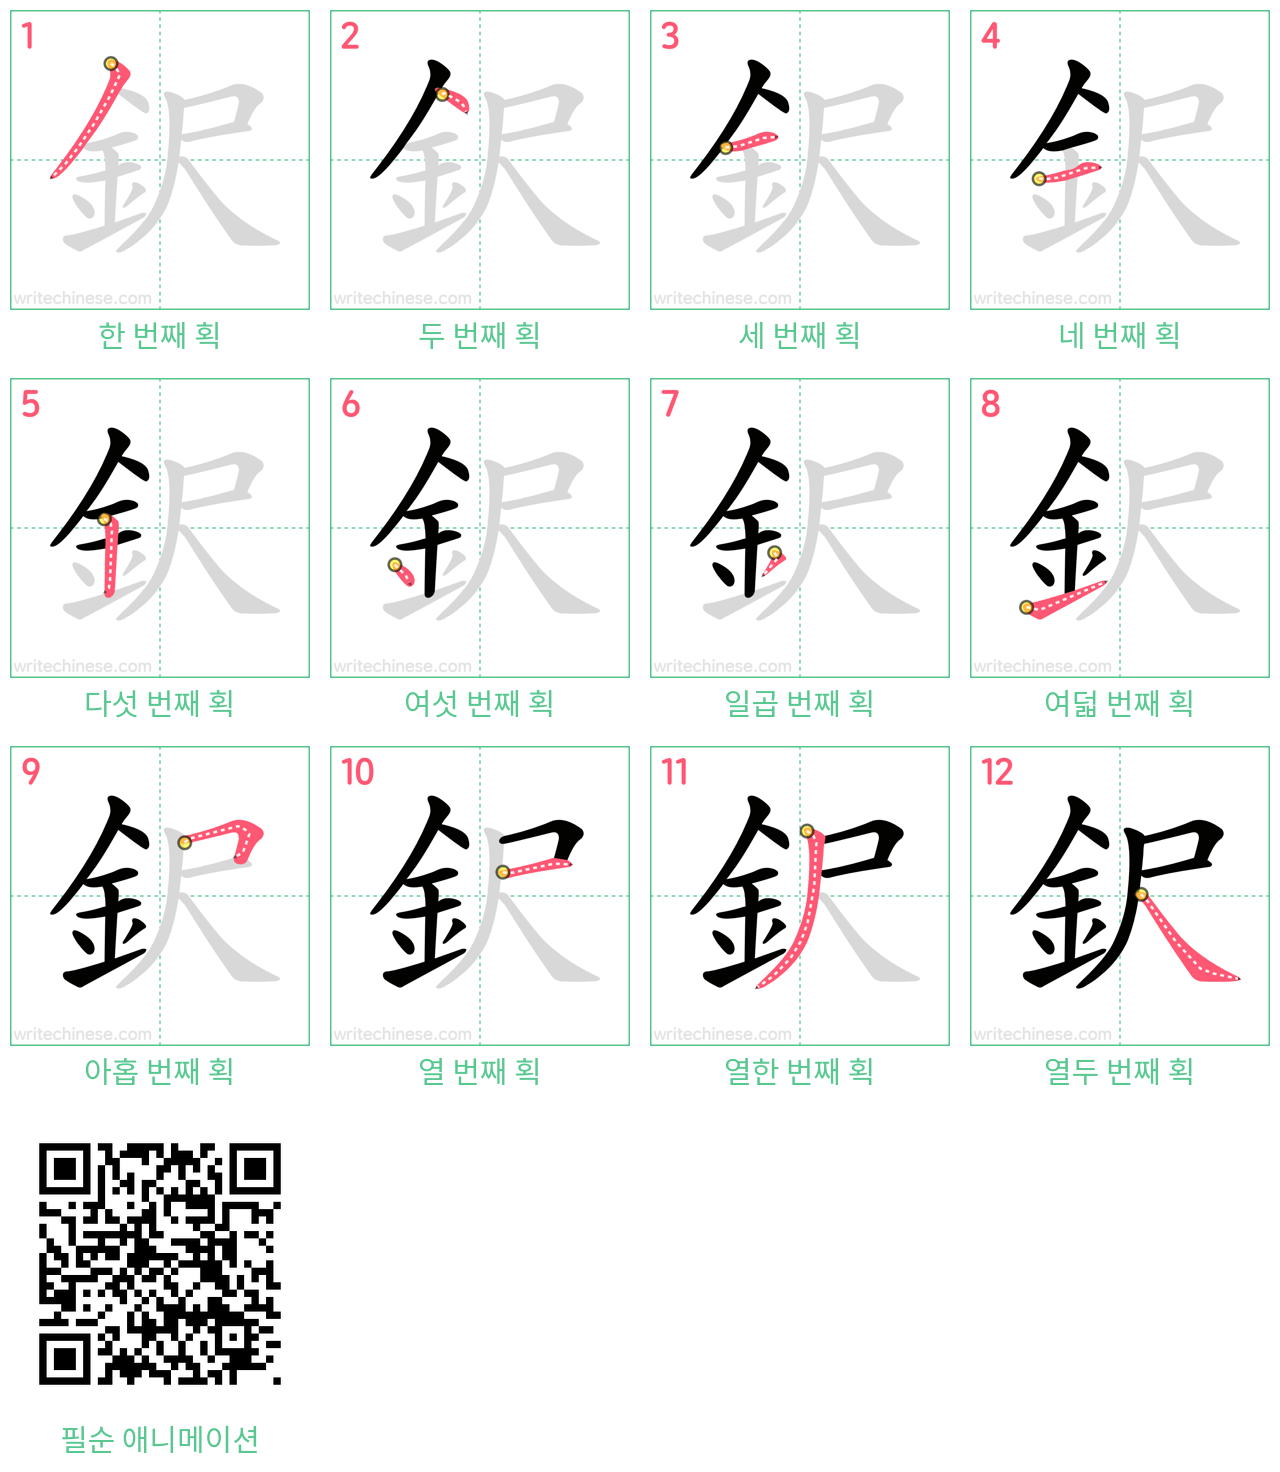 鈬 step-by-step stroke order diagrams